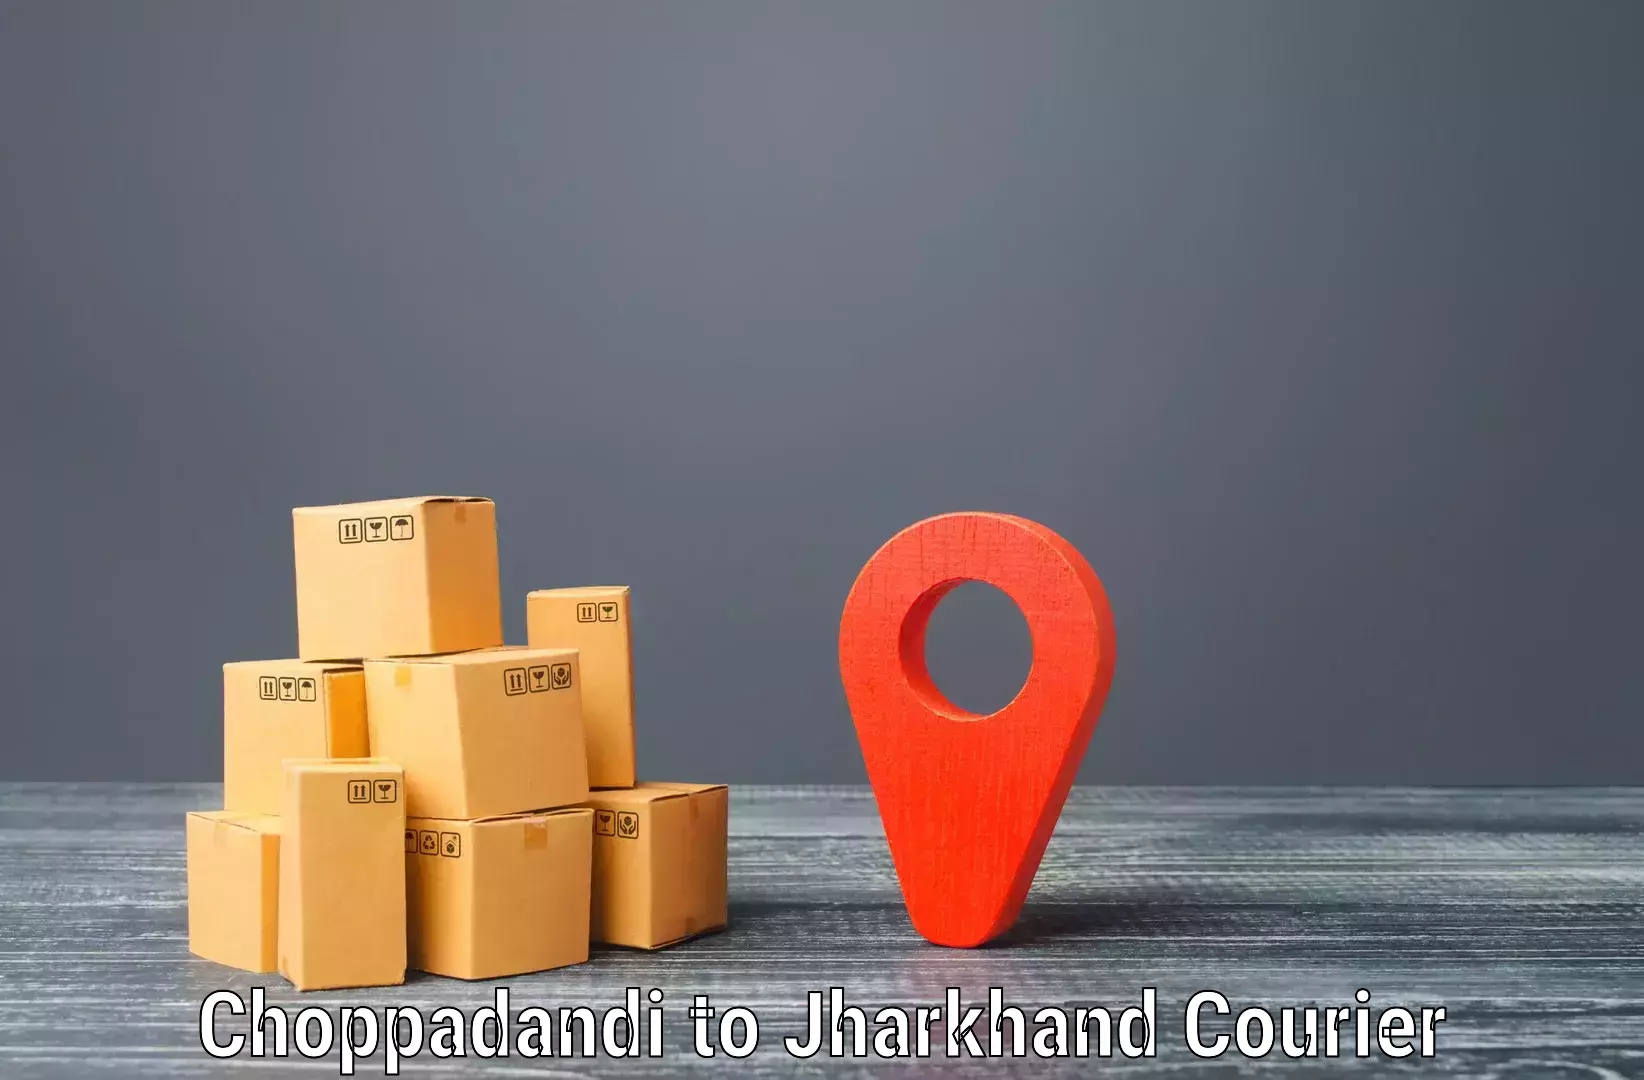 Bulk shipment in Choppadandi to Godda